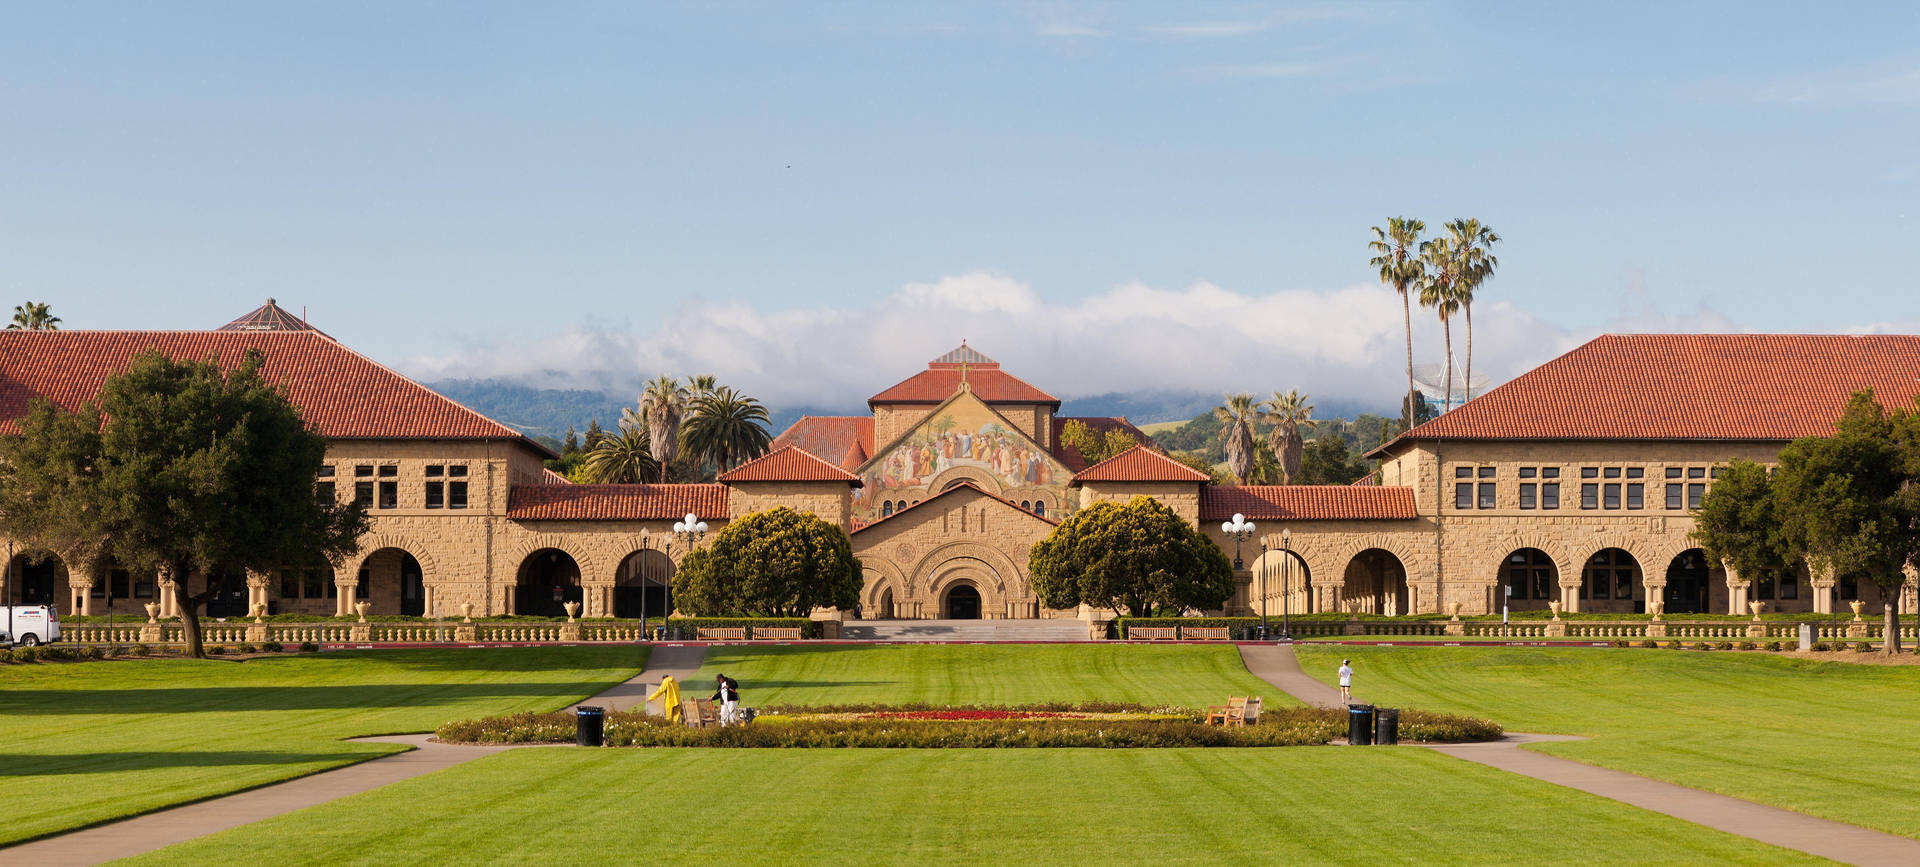 Stanforduniversity Stor Oval Wallpaper